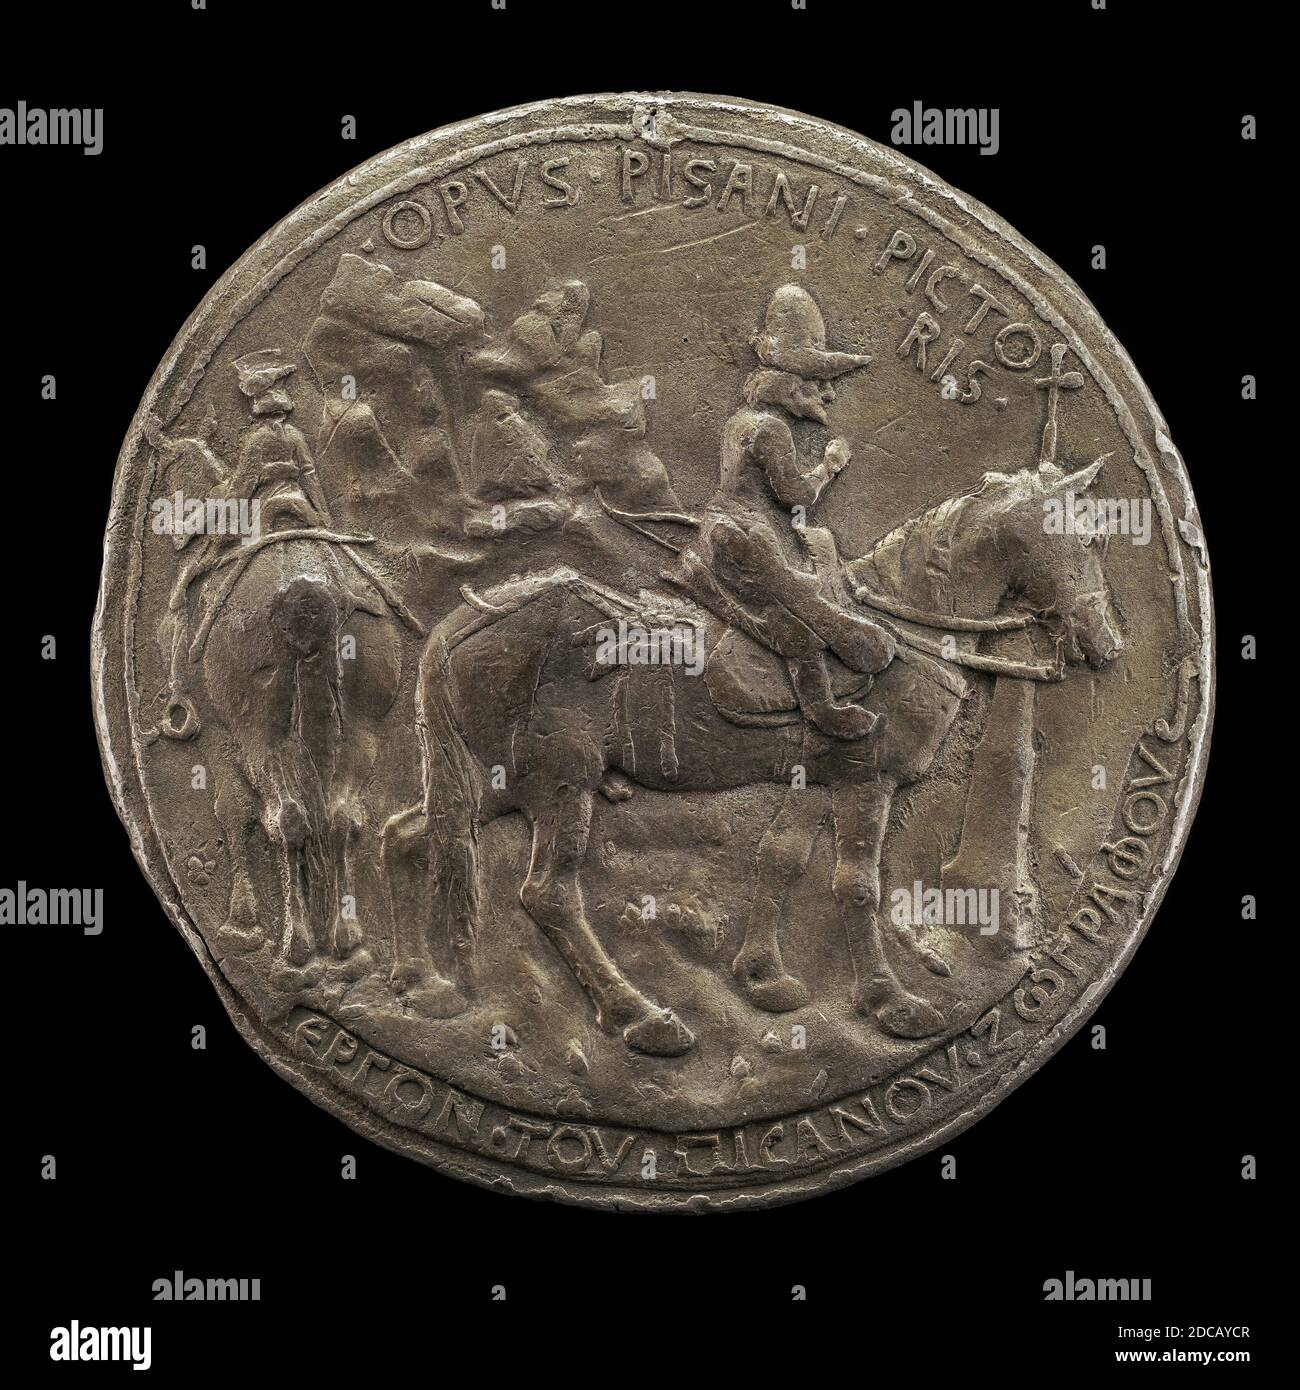 Pisanello, (artista), Veronés, c. 1395 - 1455, Juan VIII cabalgando en un paisaje rocoso, 1438, plomo/yeso de prueba, posiblemente, total (diámetro): 10.38 cm (4 1/16 pulg.), peso bruto: 421.59 gr (0.929 lb.), eje: 11:00 Foto de stock